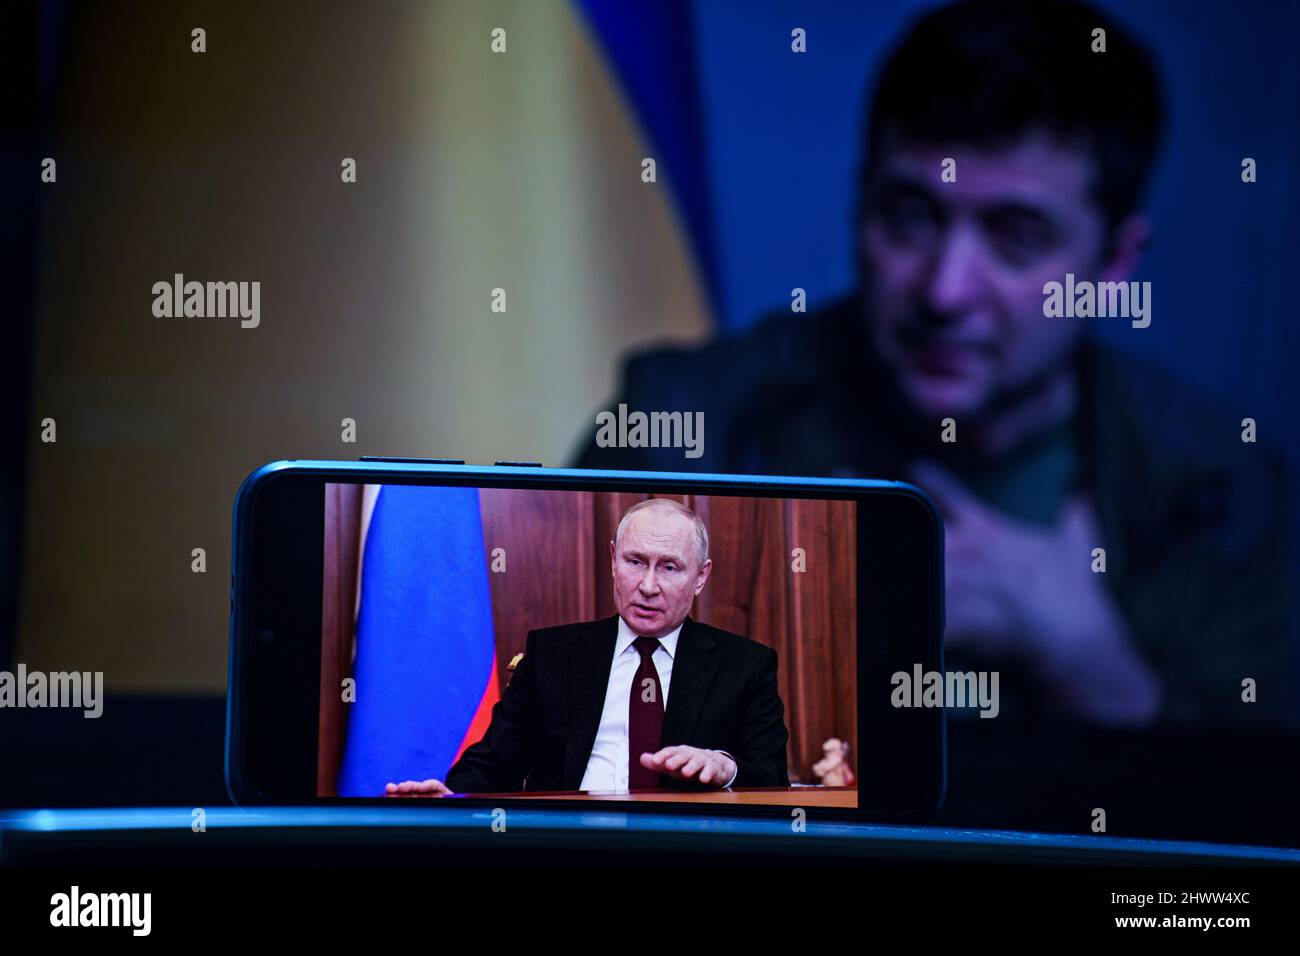 Vladimir Putin speech on TV. Volodymyr Zelensky the president of Ukraine in the background . Volodymyr Zelenskyy speech to people on TV Stock Photo